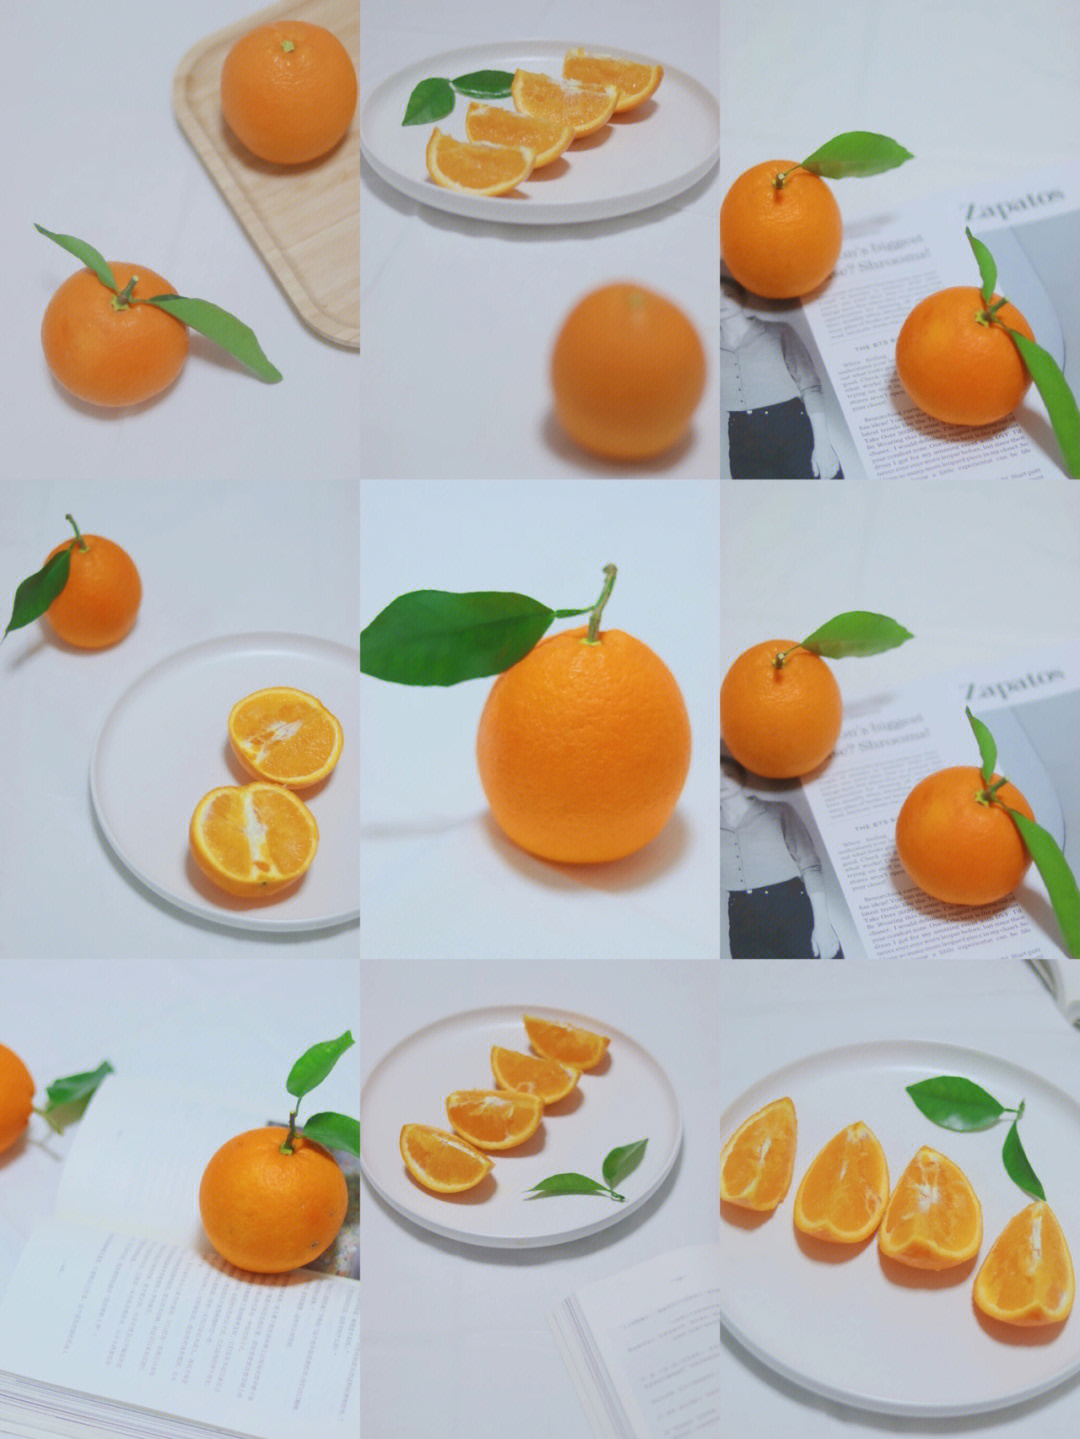 橙子拍照九宫格图片